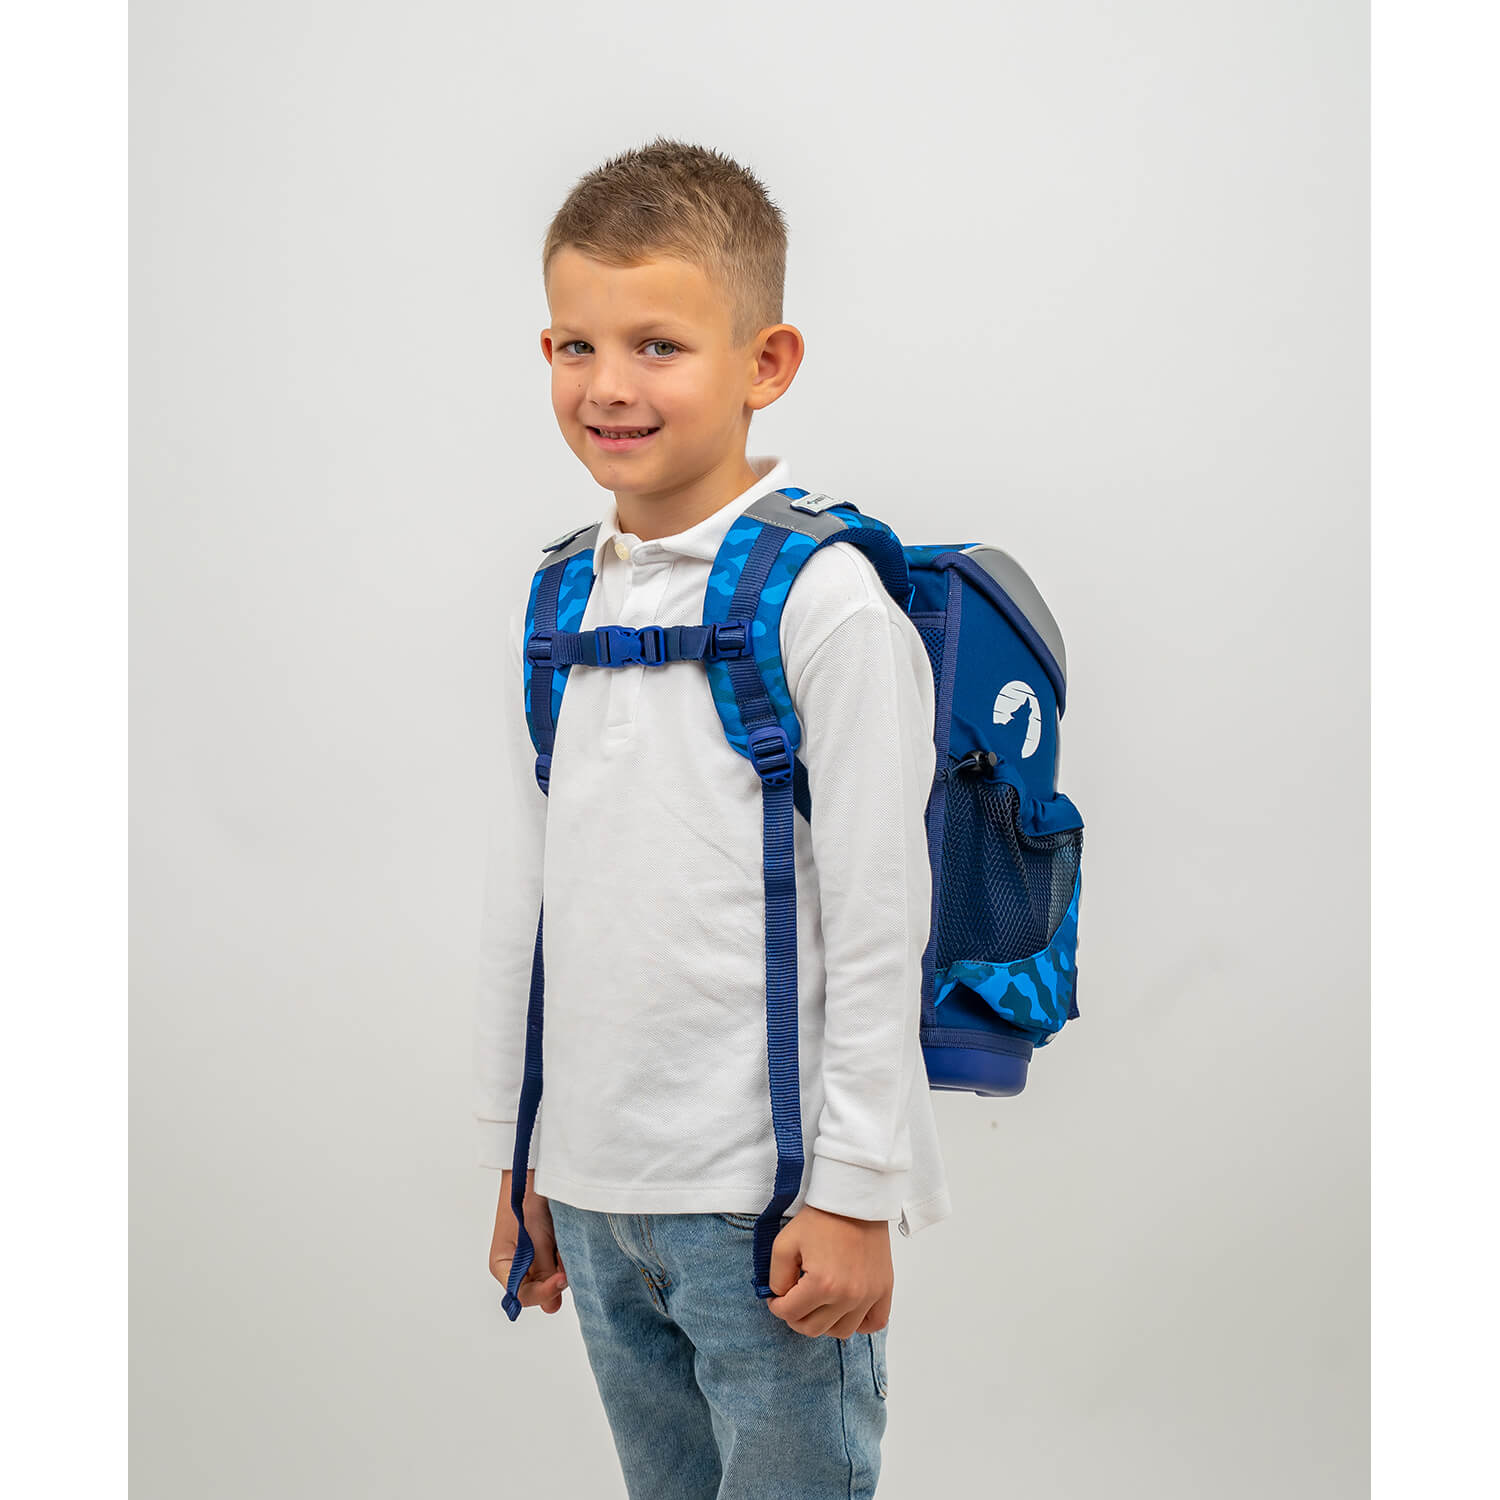 Mini-Fit Alpha Wolf schoolbag set 5 pcs with GRATIS chest strap